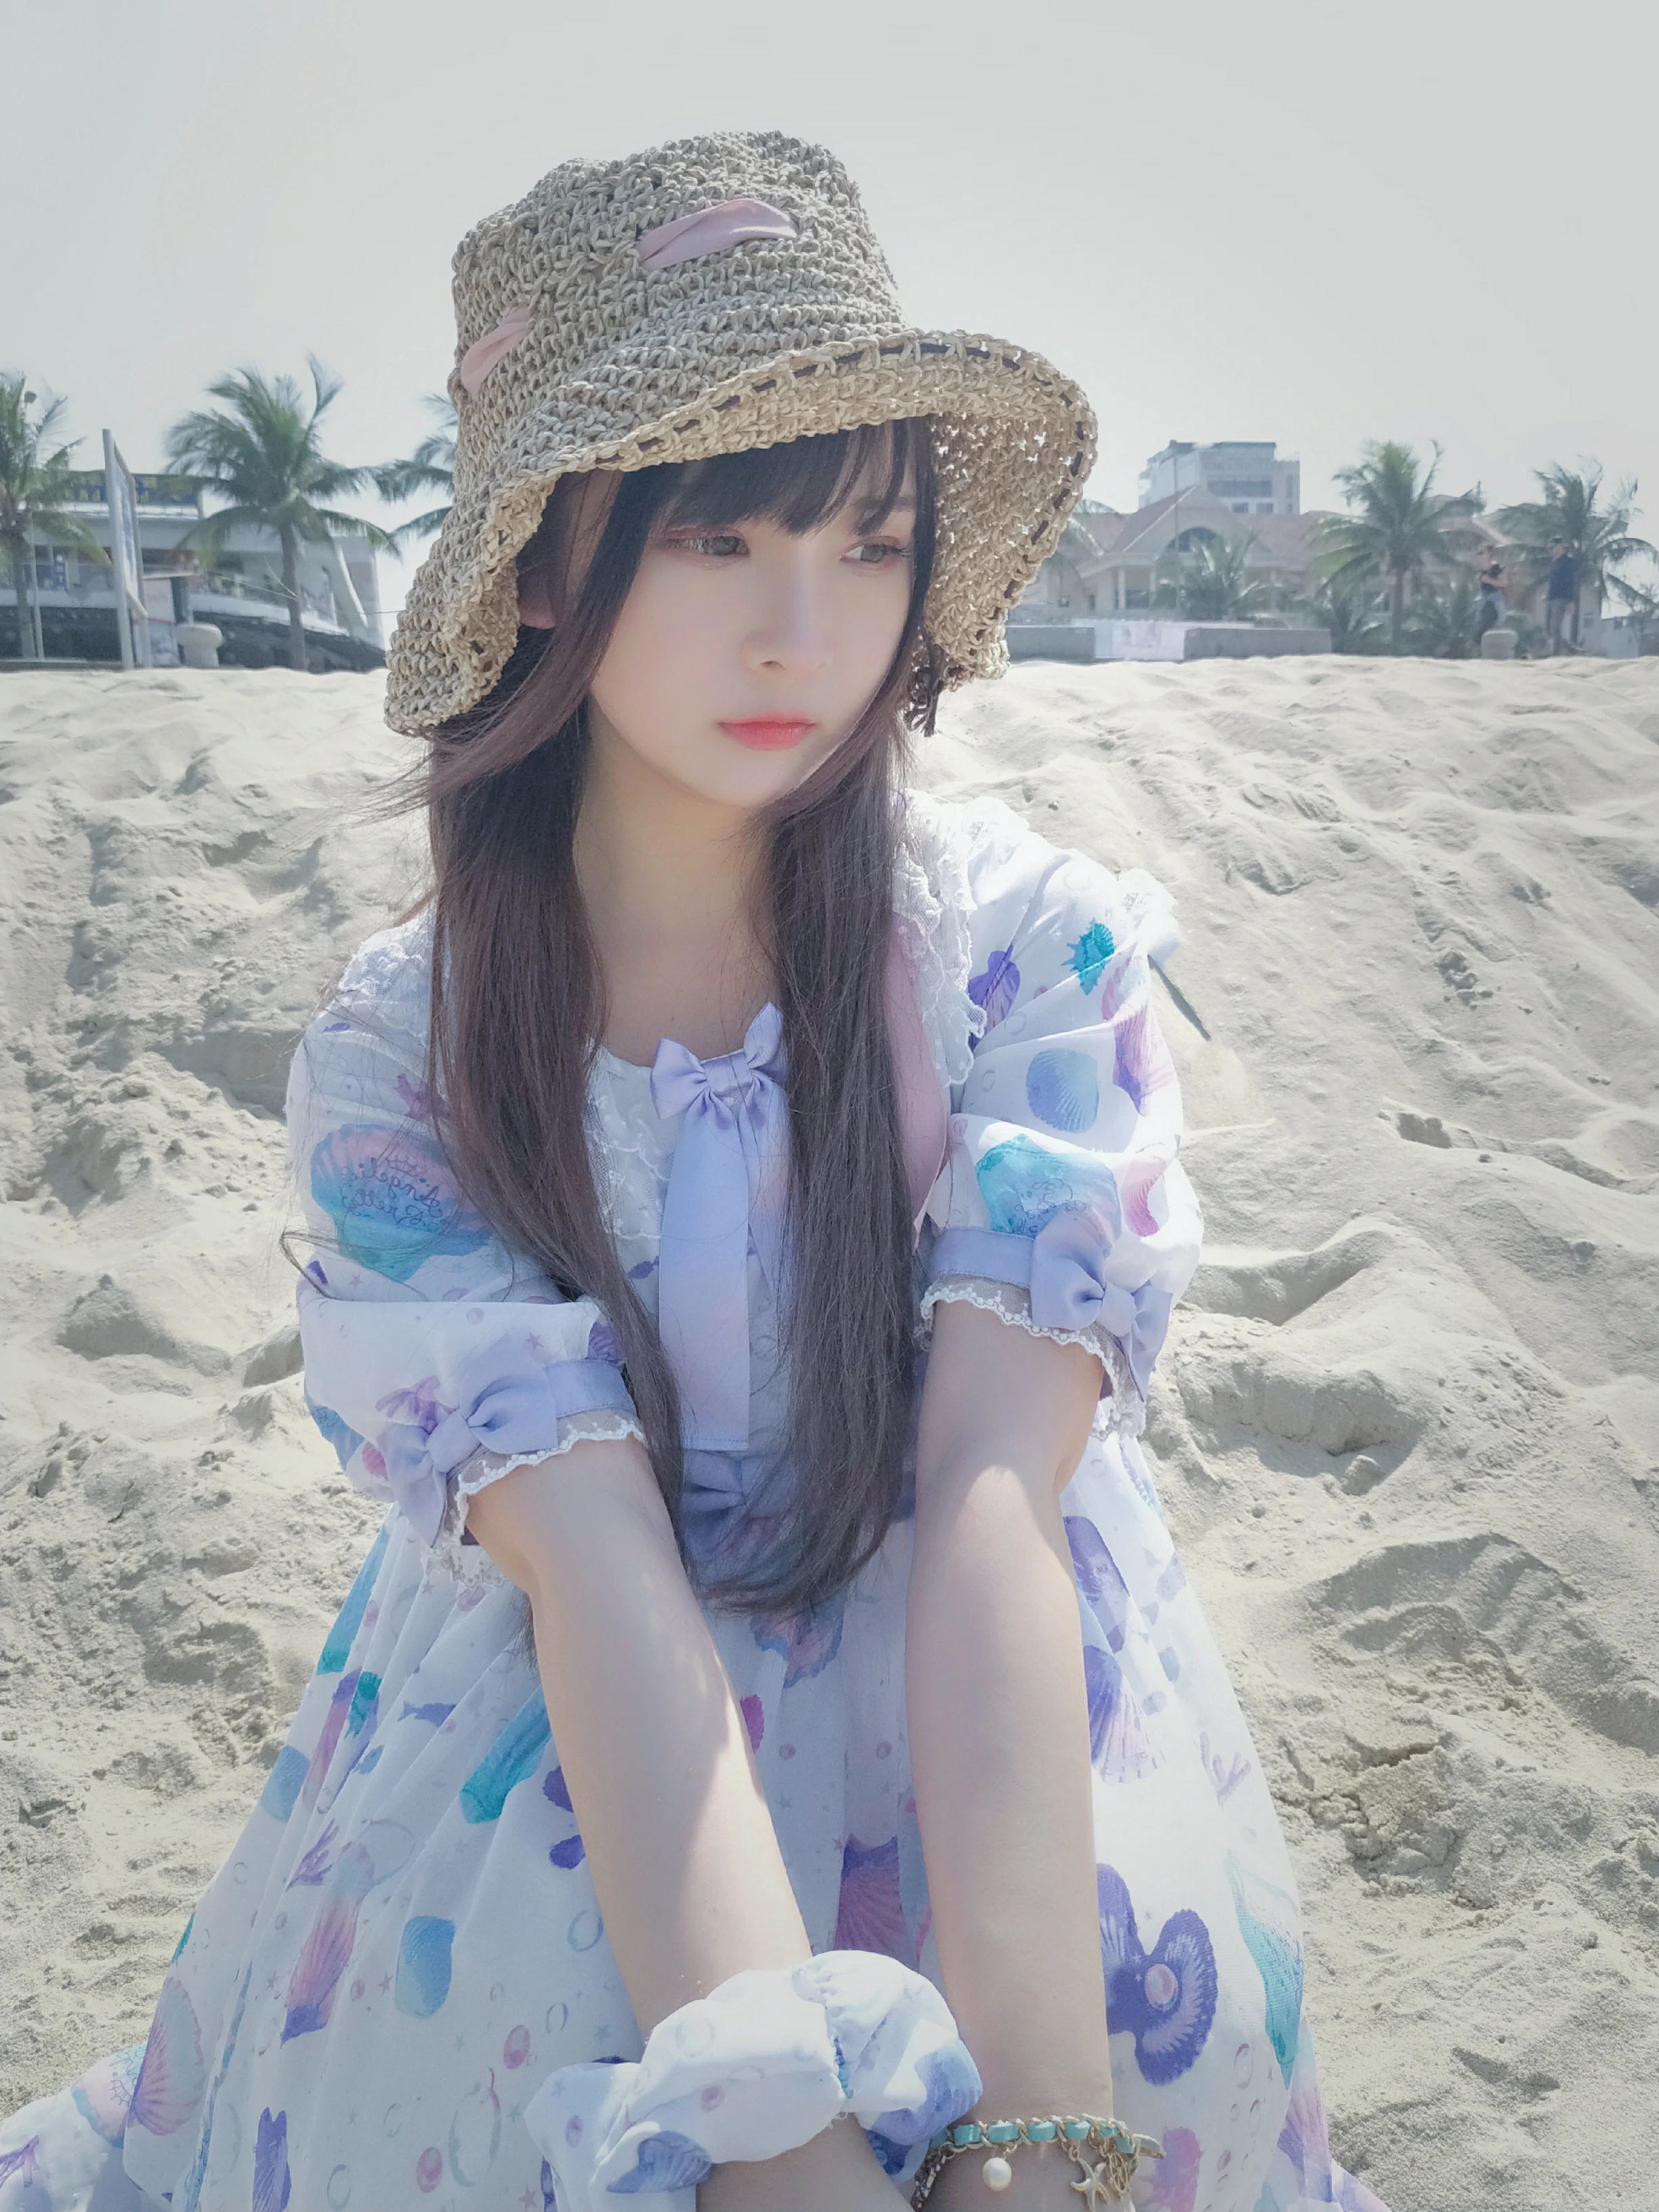 清纯少女 古川kagura 蓝色连身裙之沙滩写真,_20190207_175500